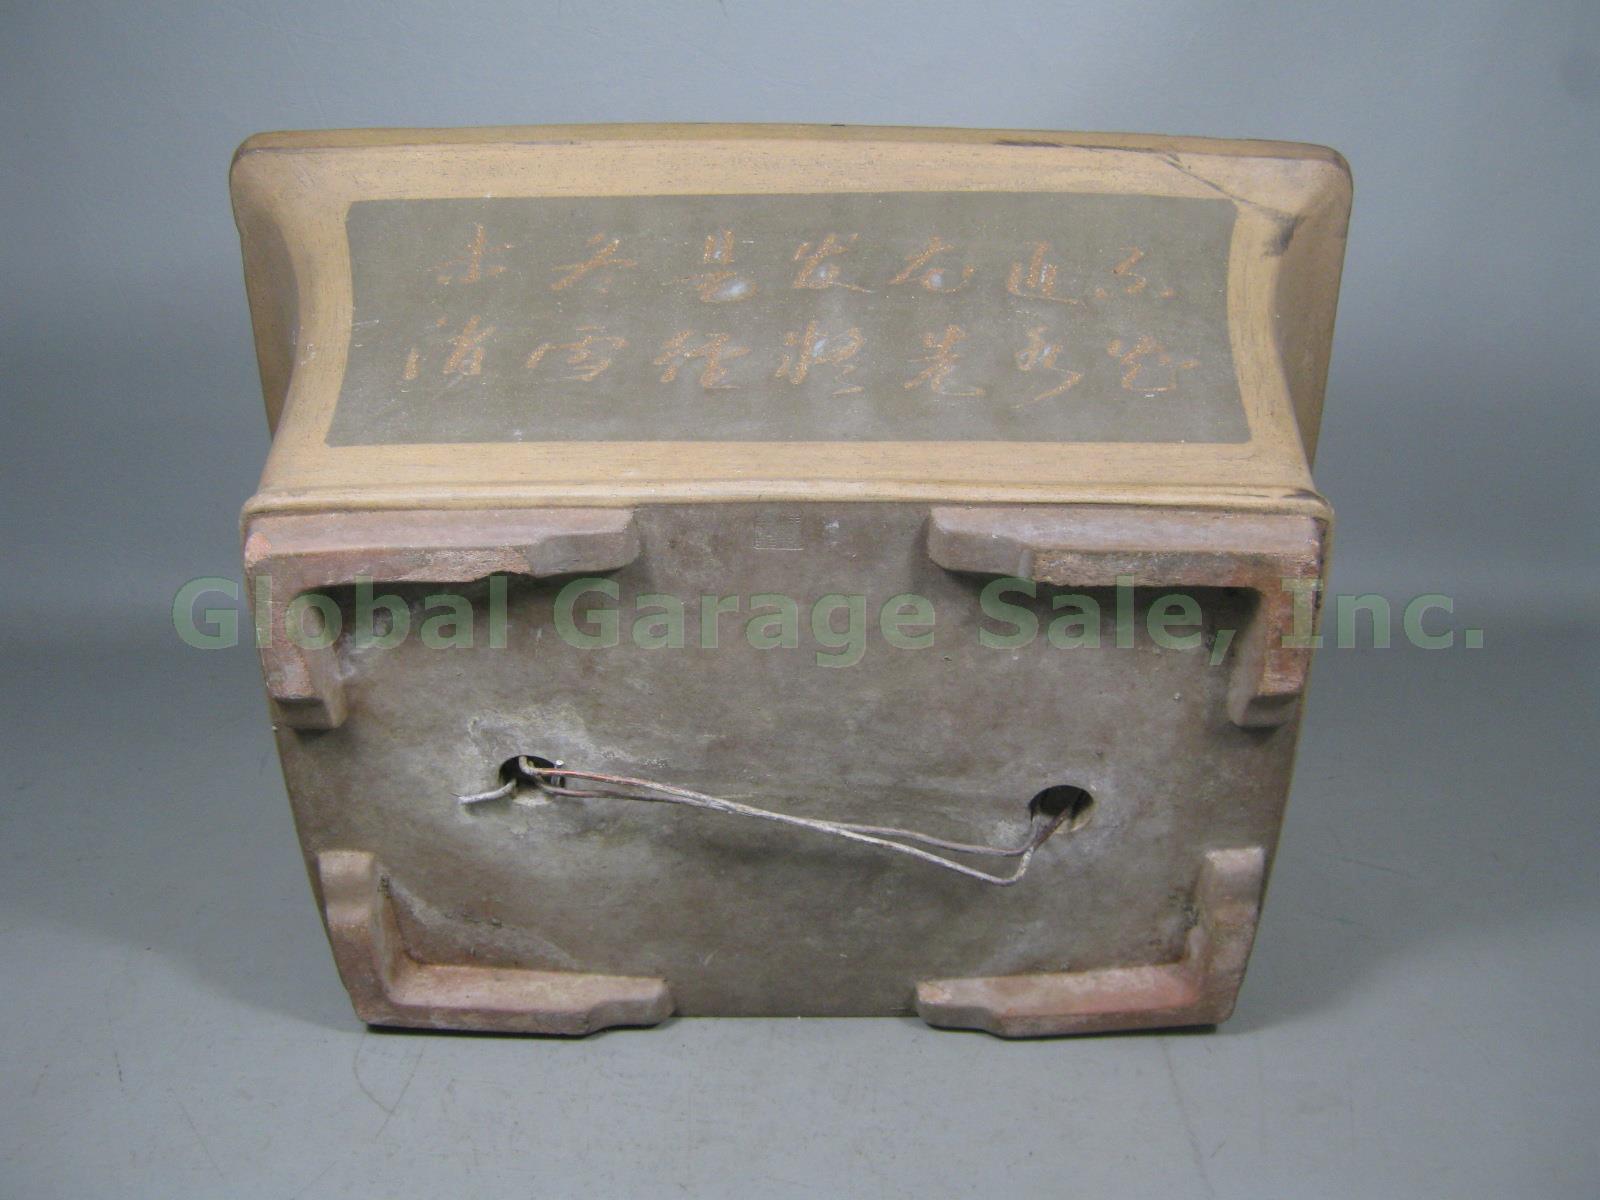 Large Rectangular Rectangle Ceramic Bonsai Pot Chinese? 19.25" x 14.25" x 9.25" 6